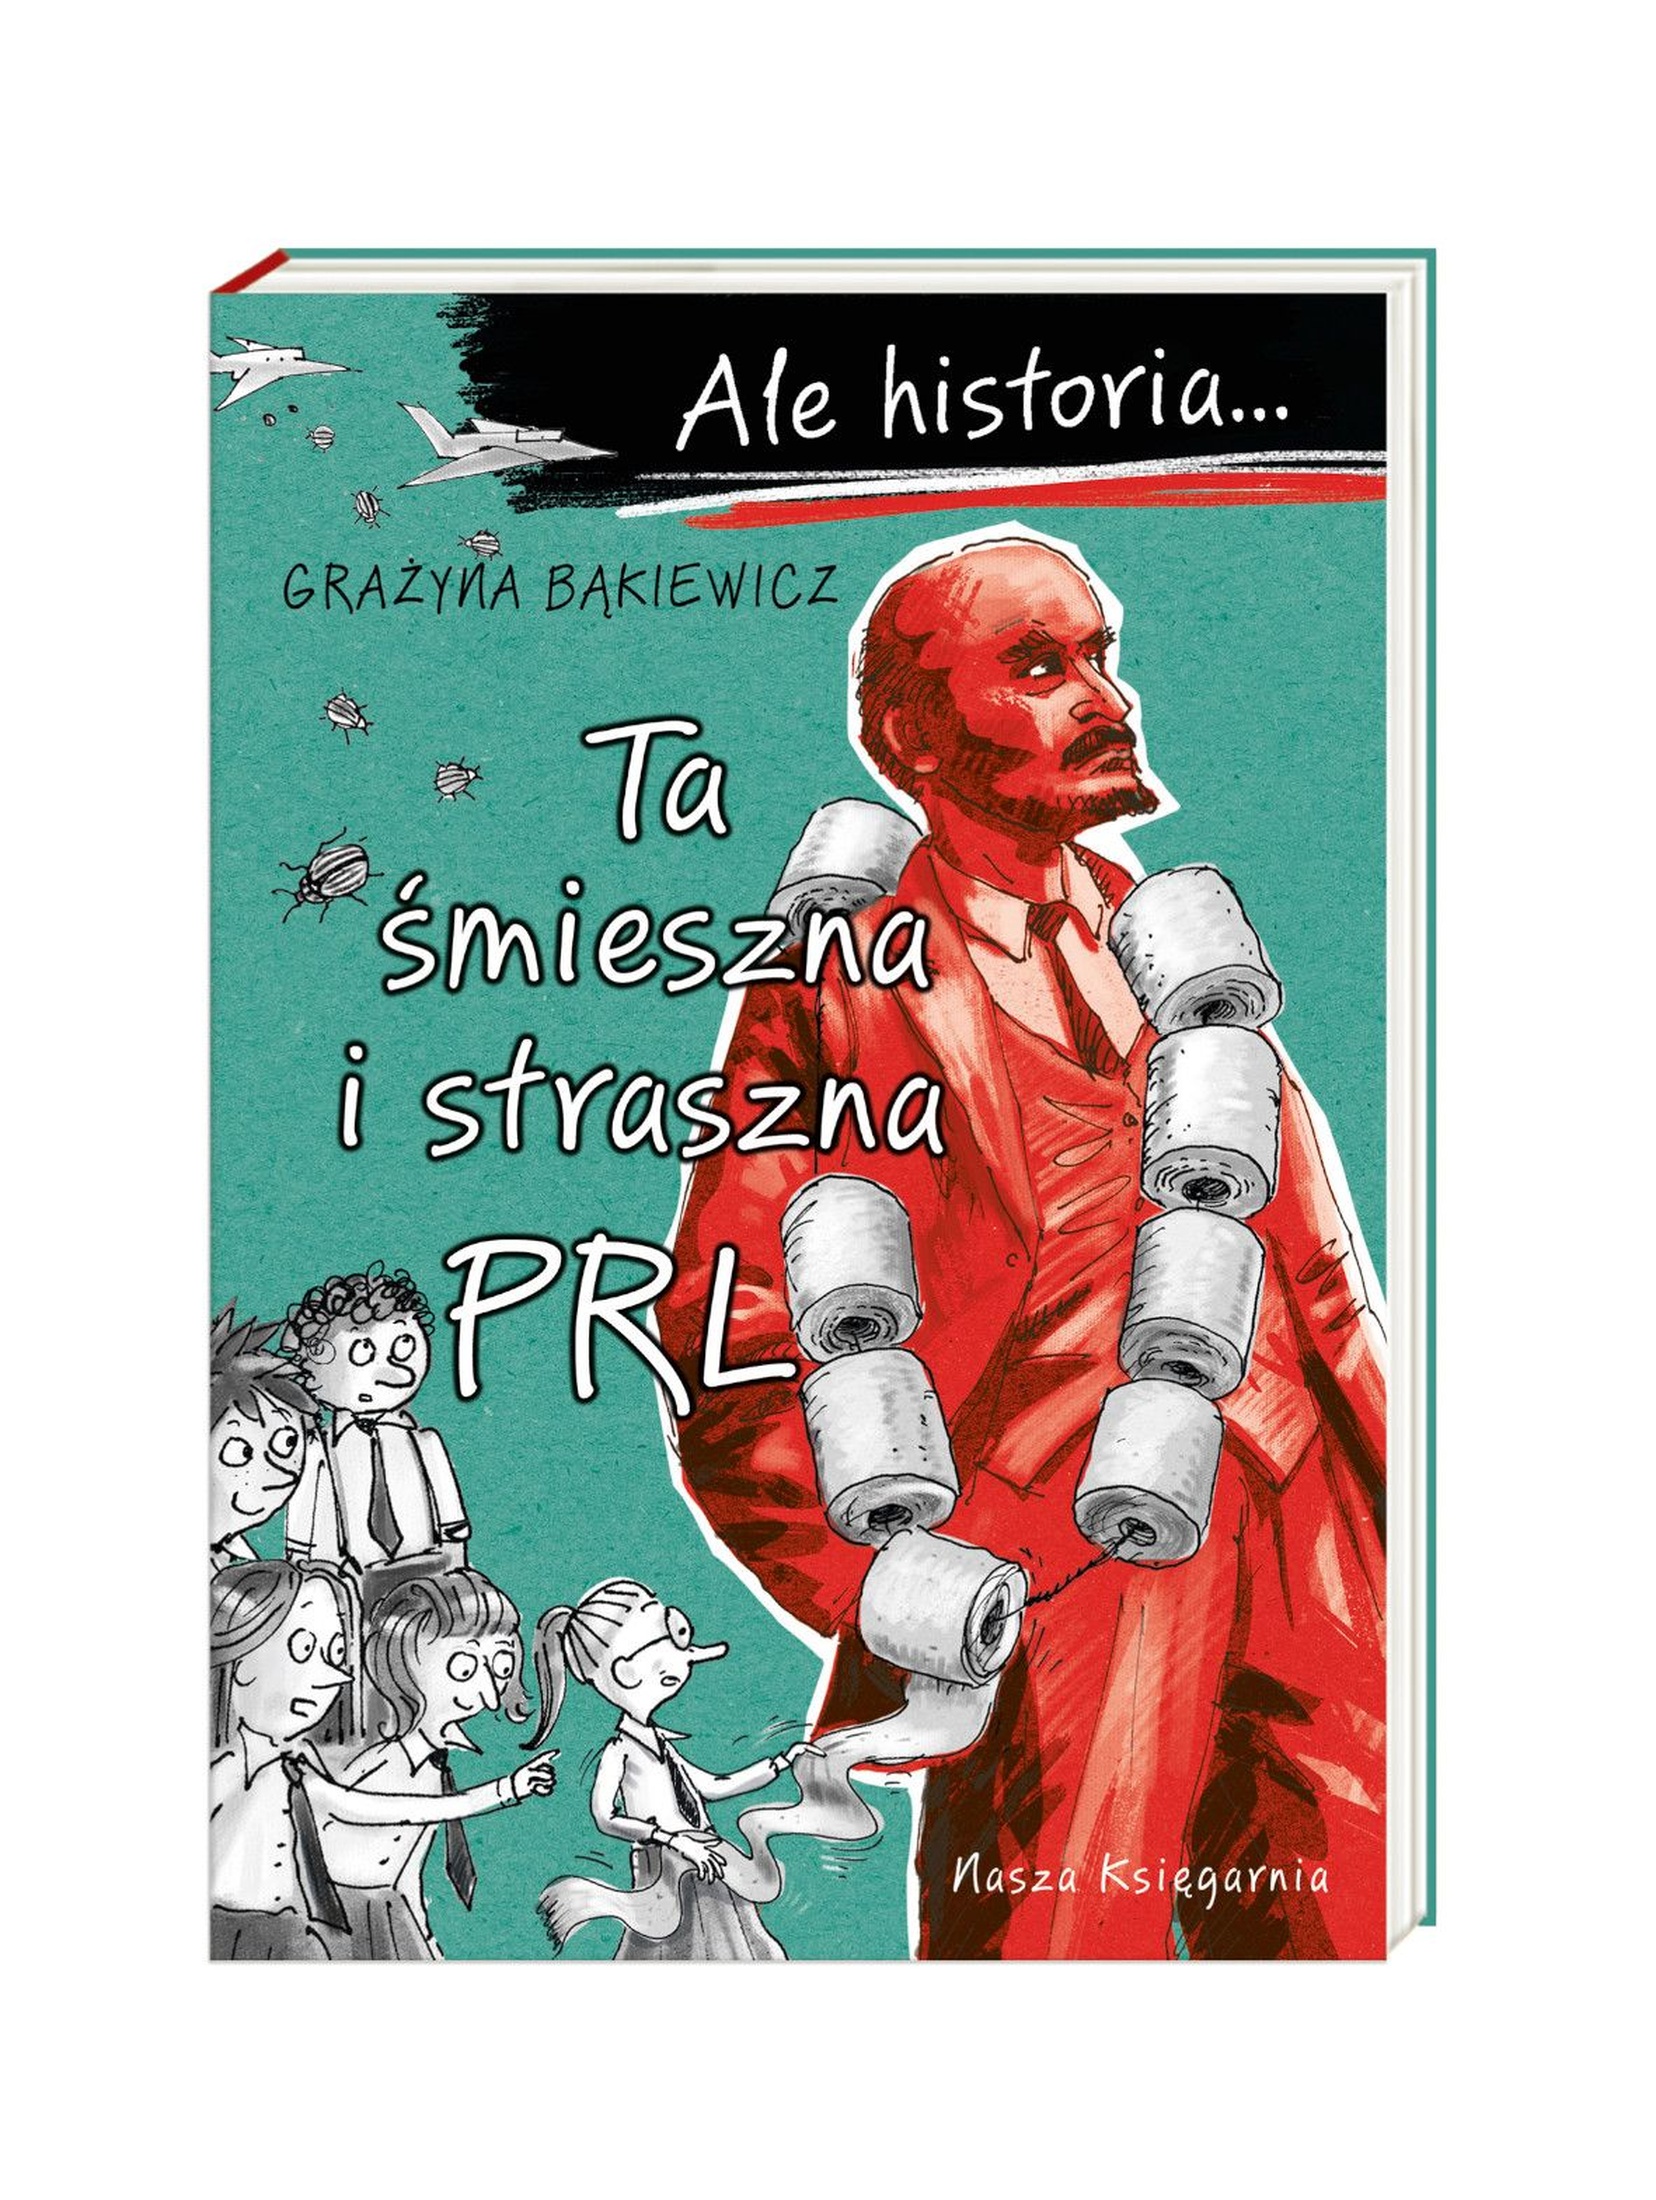 Książka "Ale Historia...Ta śmieszna i straszna PRL"